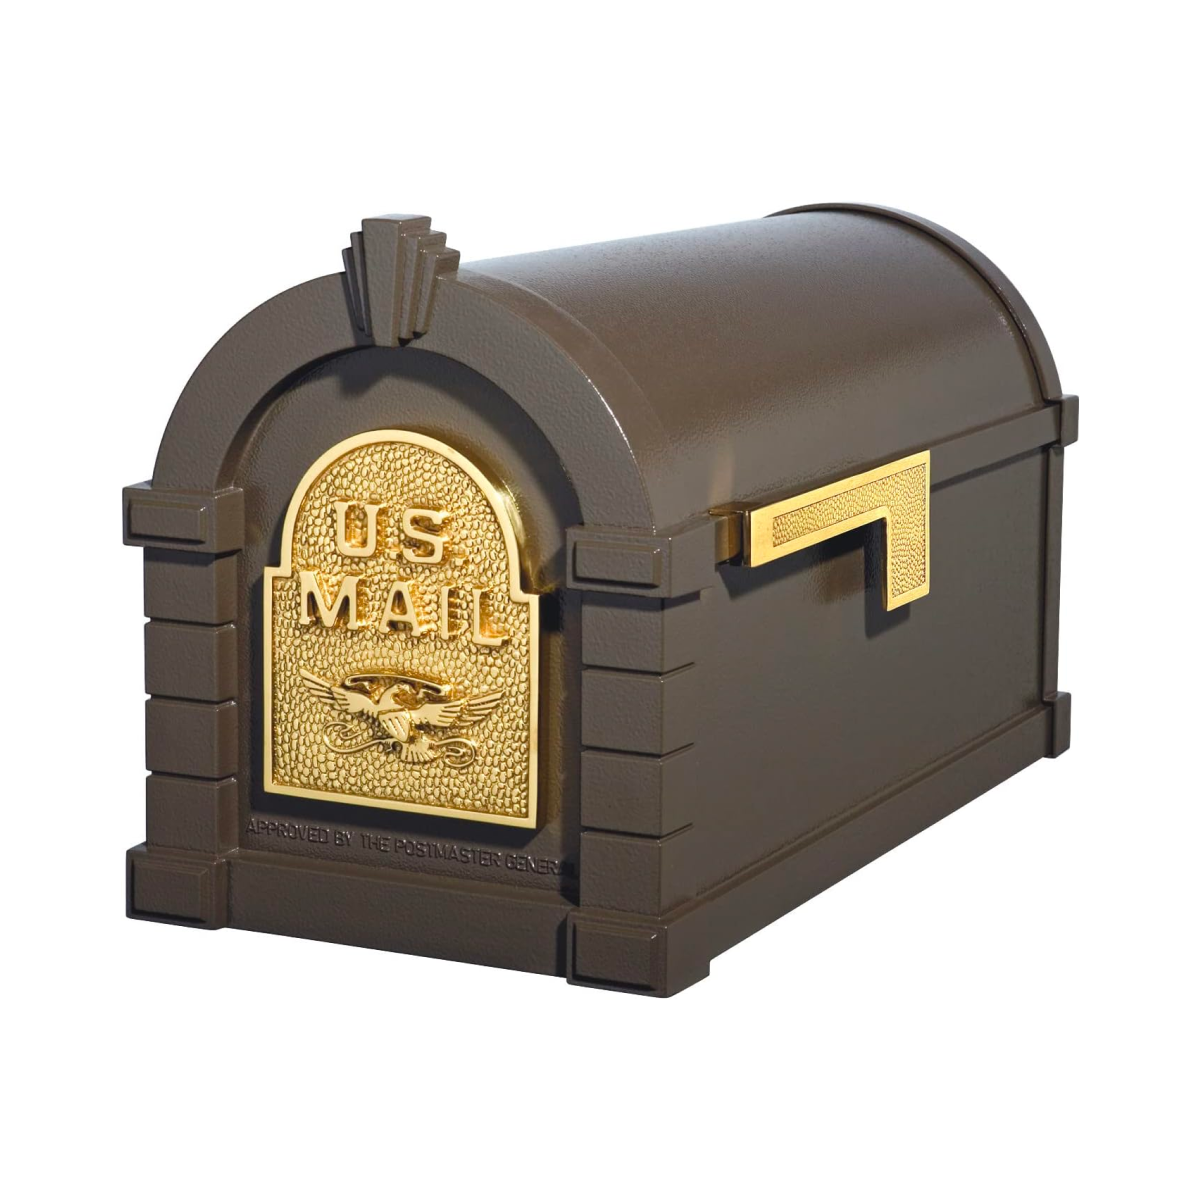 Keystone Mailbox Product Image